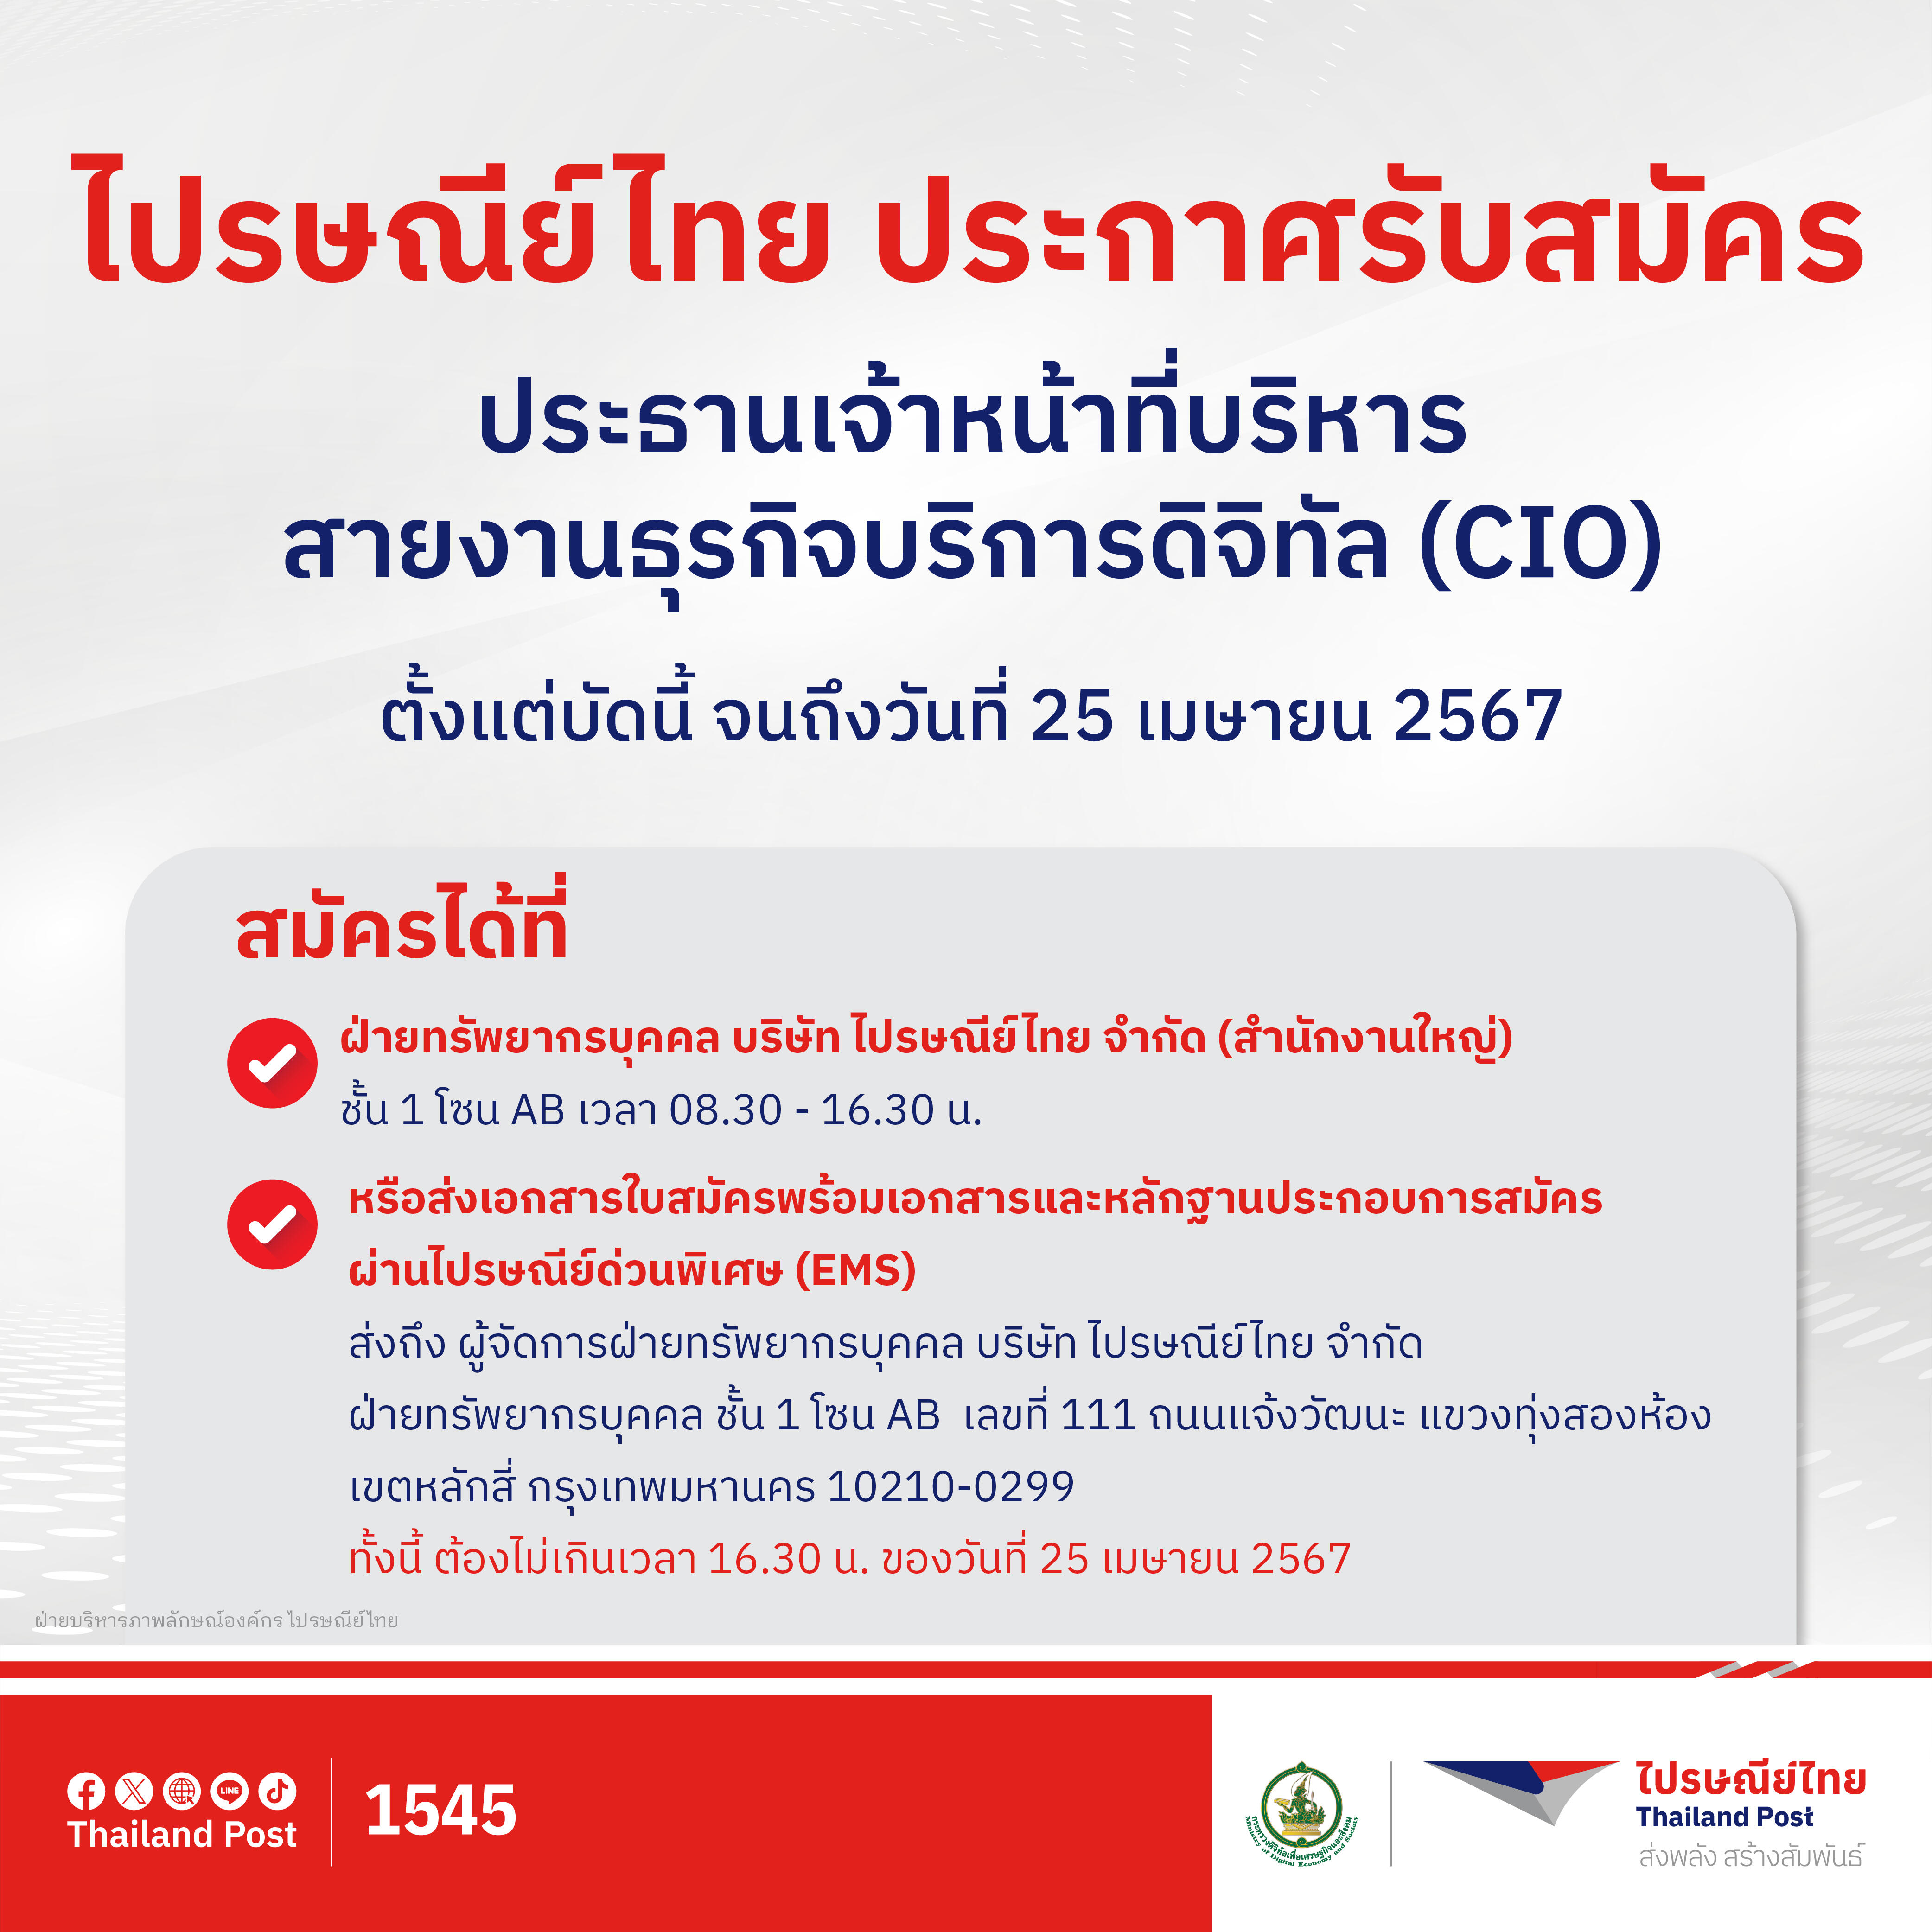 ไปรษณีย์ไทยเปิดรับสมัครประธานเจ้าหน้าที่บริหารสายงานธุรกิจบริการดิจิทัล (CIO) สมัครได้ตั้งแต่วันนี้ ถึง 25 เมษายน 2567